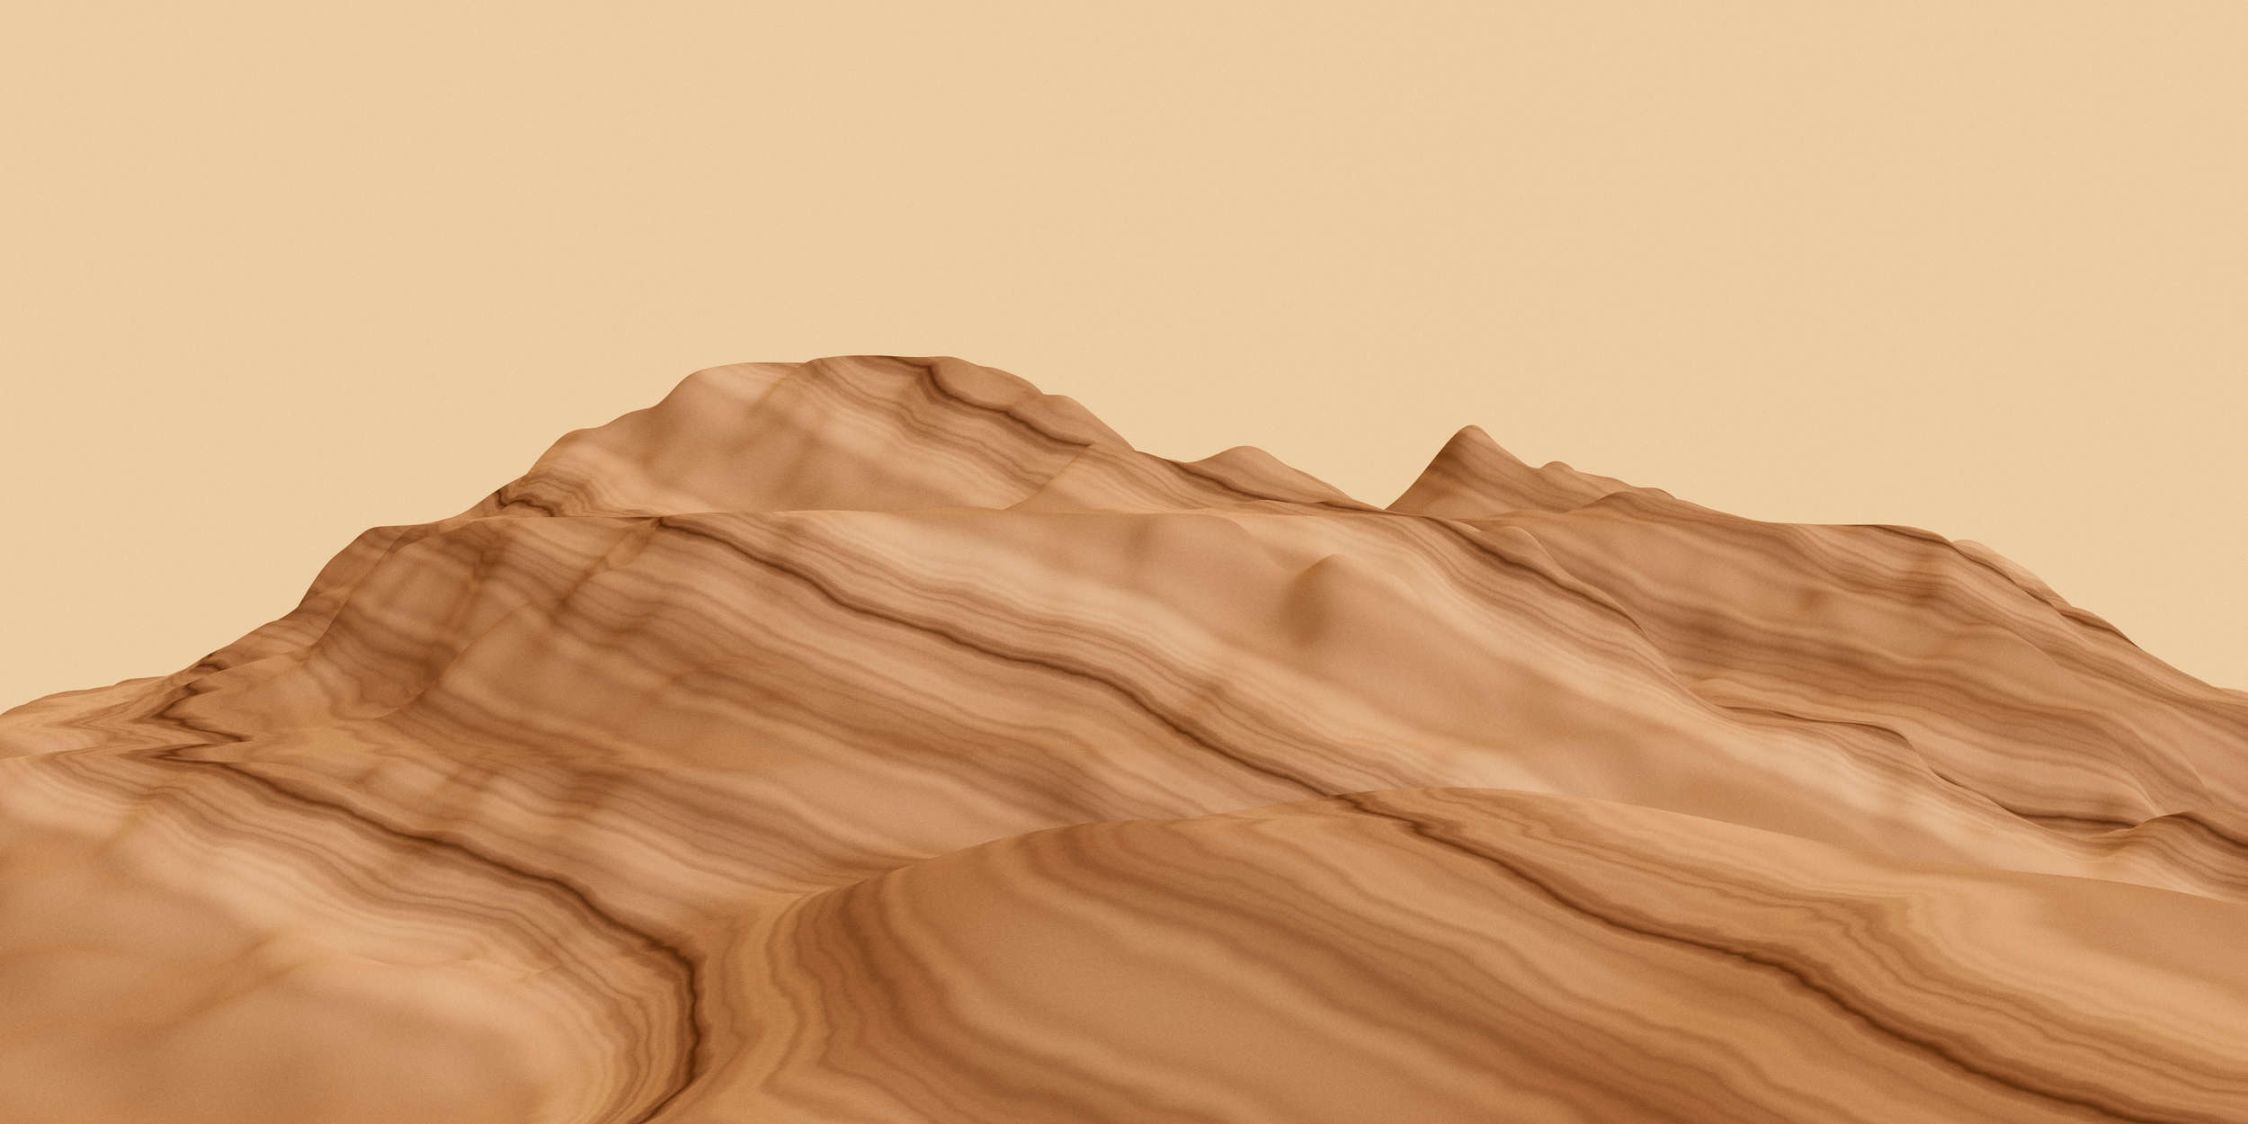             Photo wallpaper »leia« - Abstract mountains - Matt, Smooth non-woven fabric
        